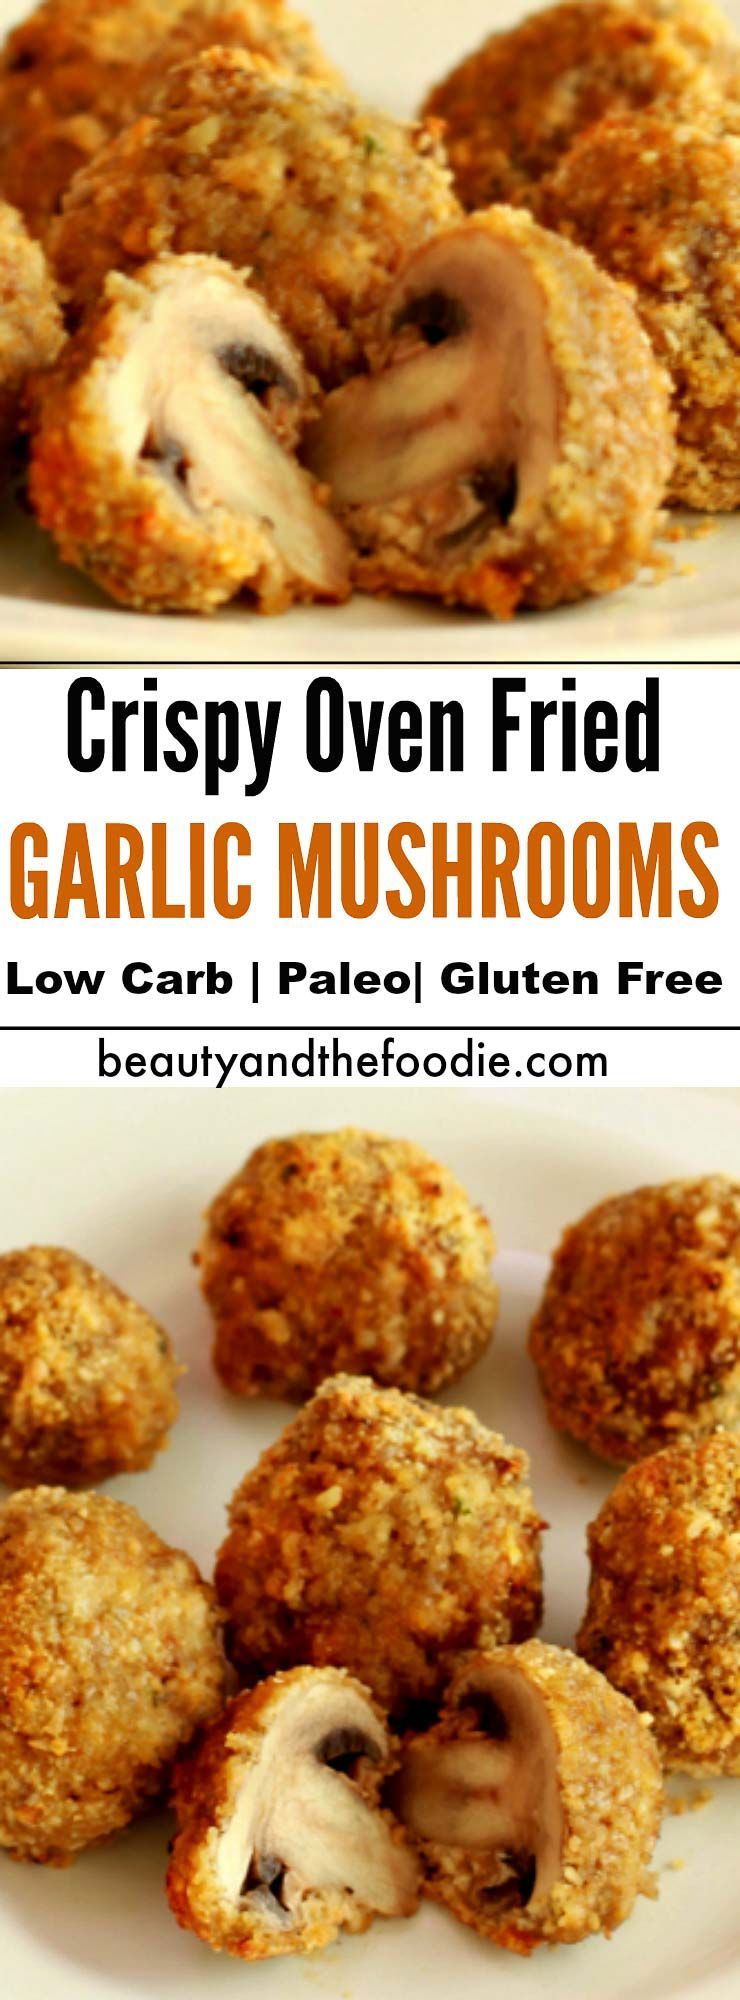 CRISPY OVEN FRIED GARLIC MUSHROOMS -   20 baked mushroom recipes
 ideas